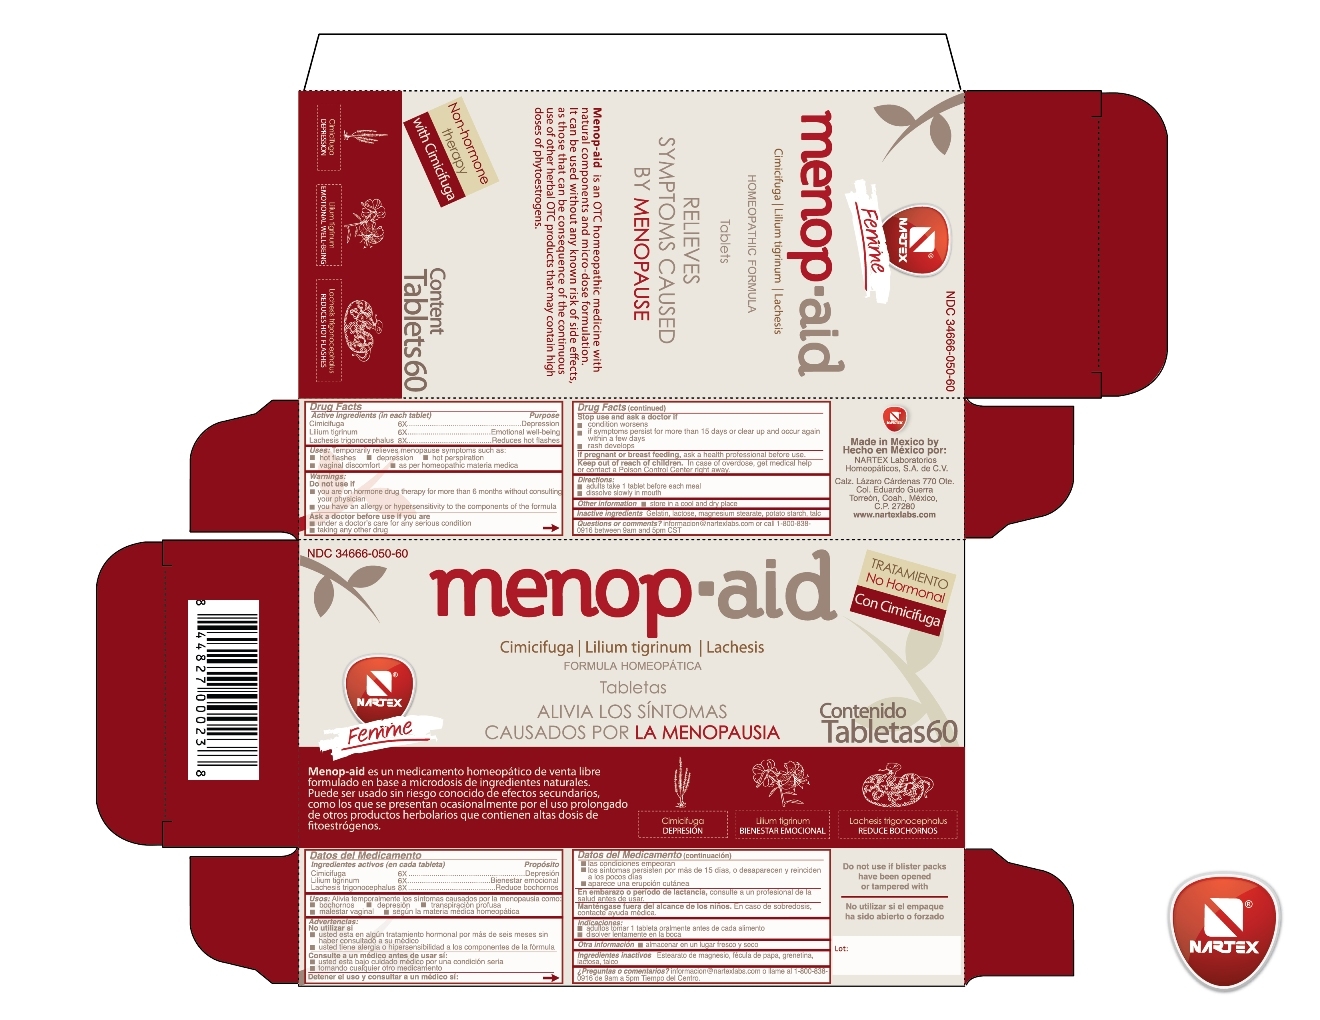 Menopaid Tablet Carton